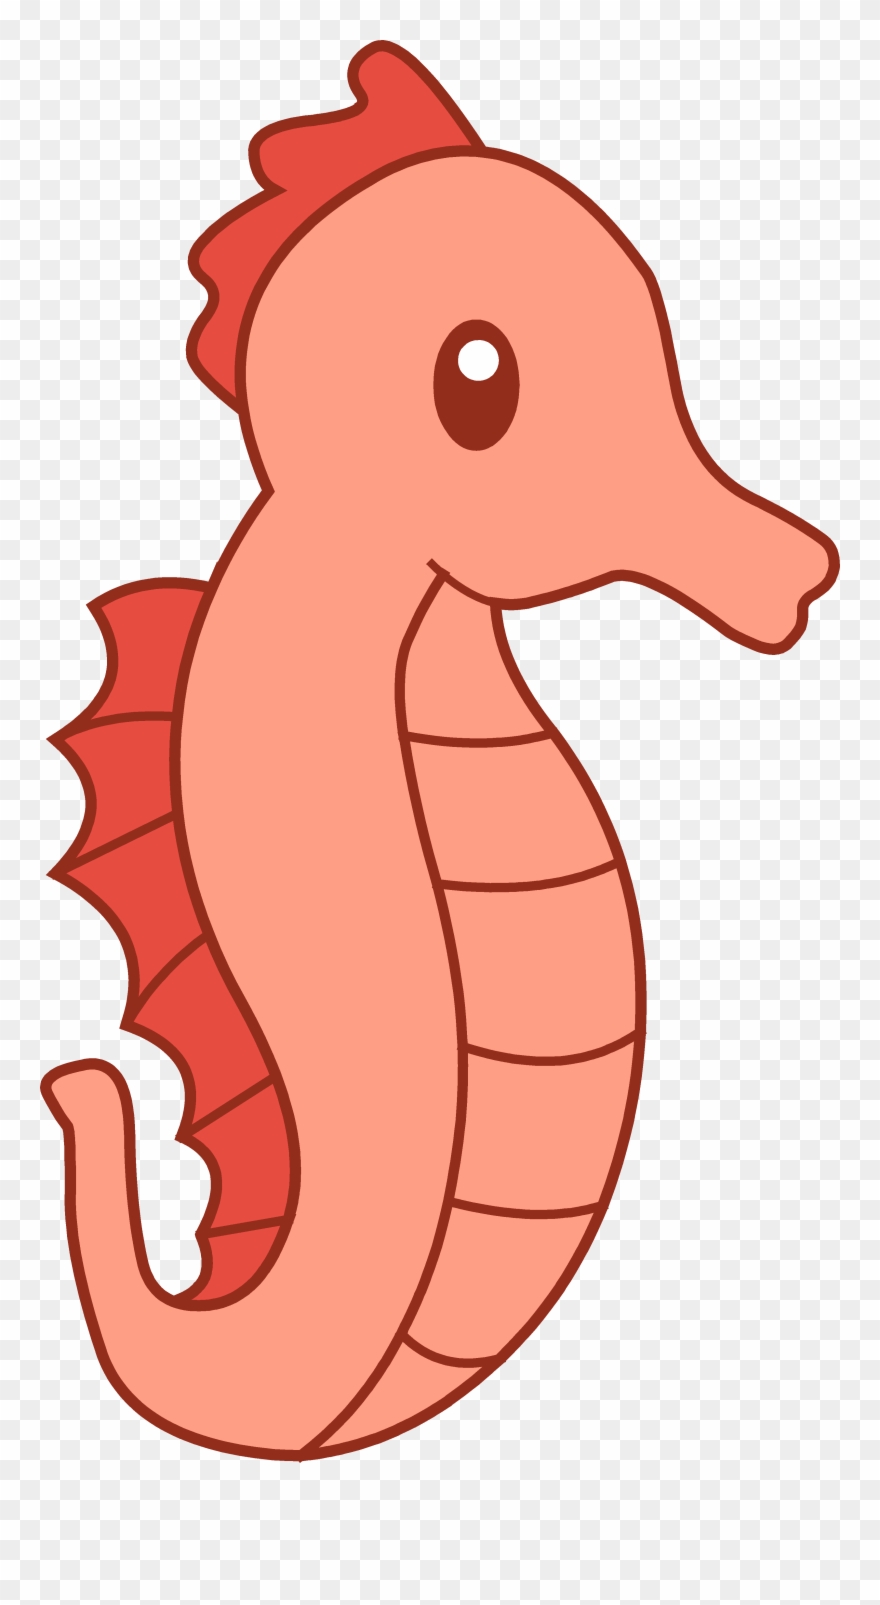 Cute red seahorse.